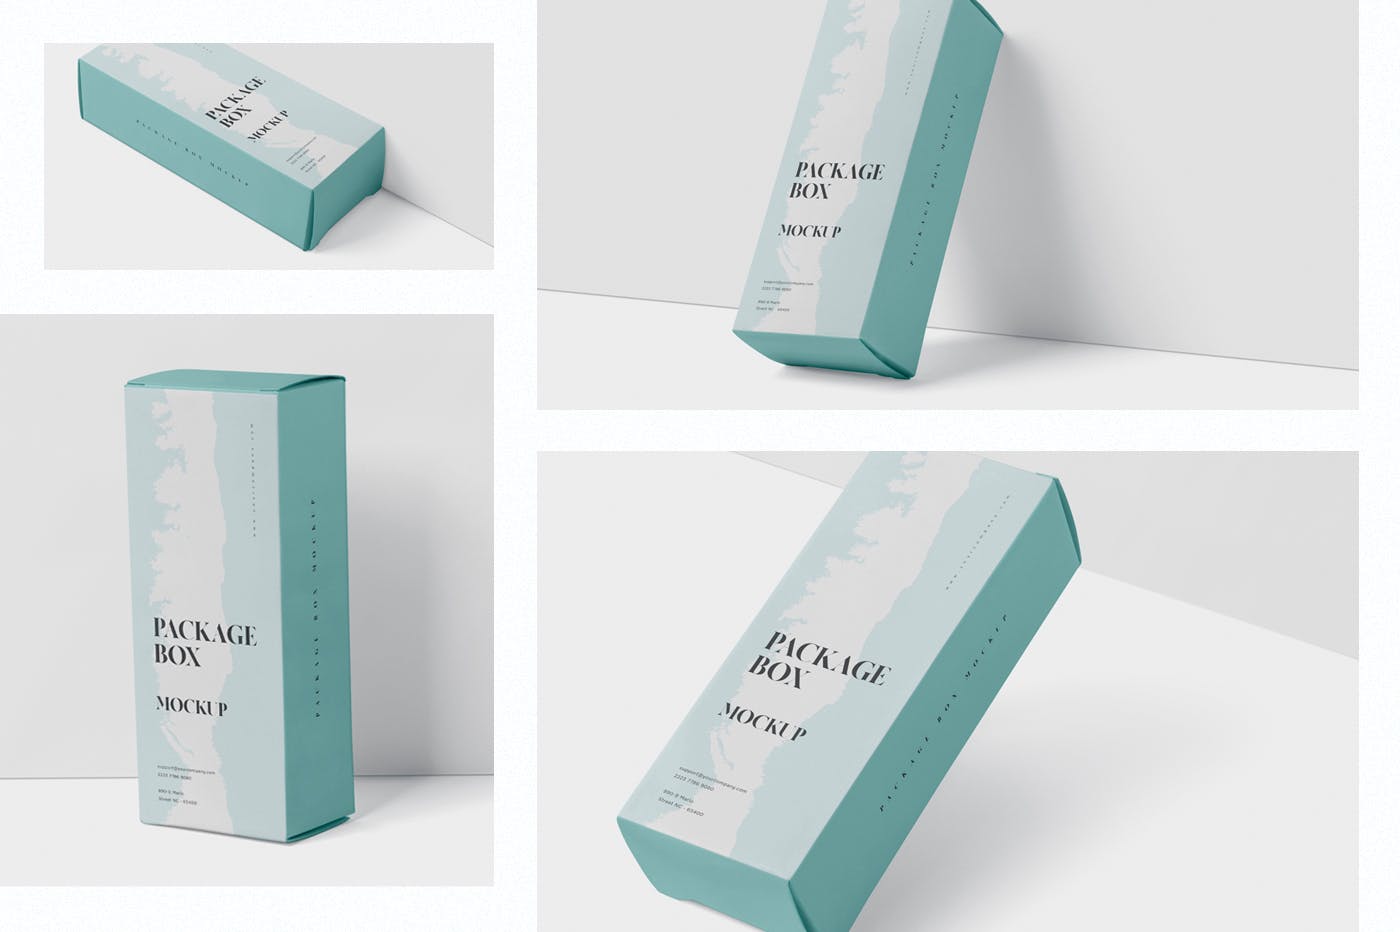 简约风多用途产品包装纸盒设计效果图蚂蚁素材精选 Package Box Mock-Up – High Rectangle Shape插图(1)